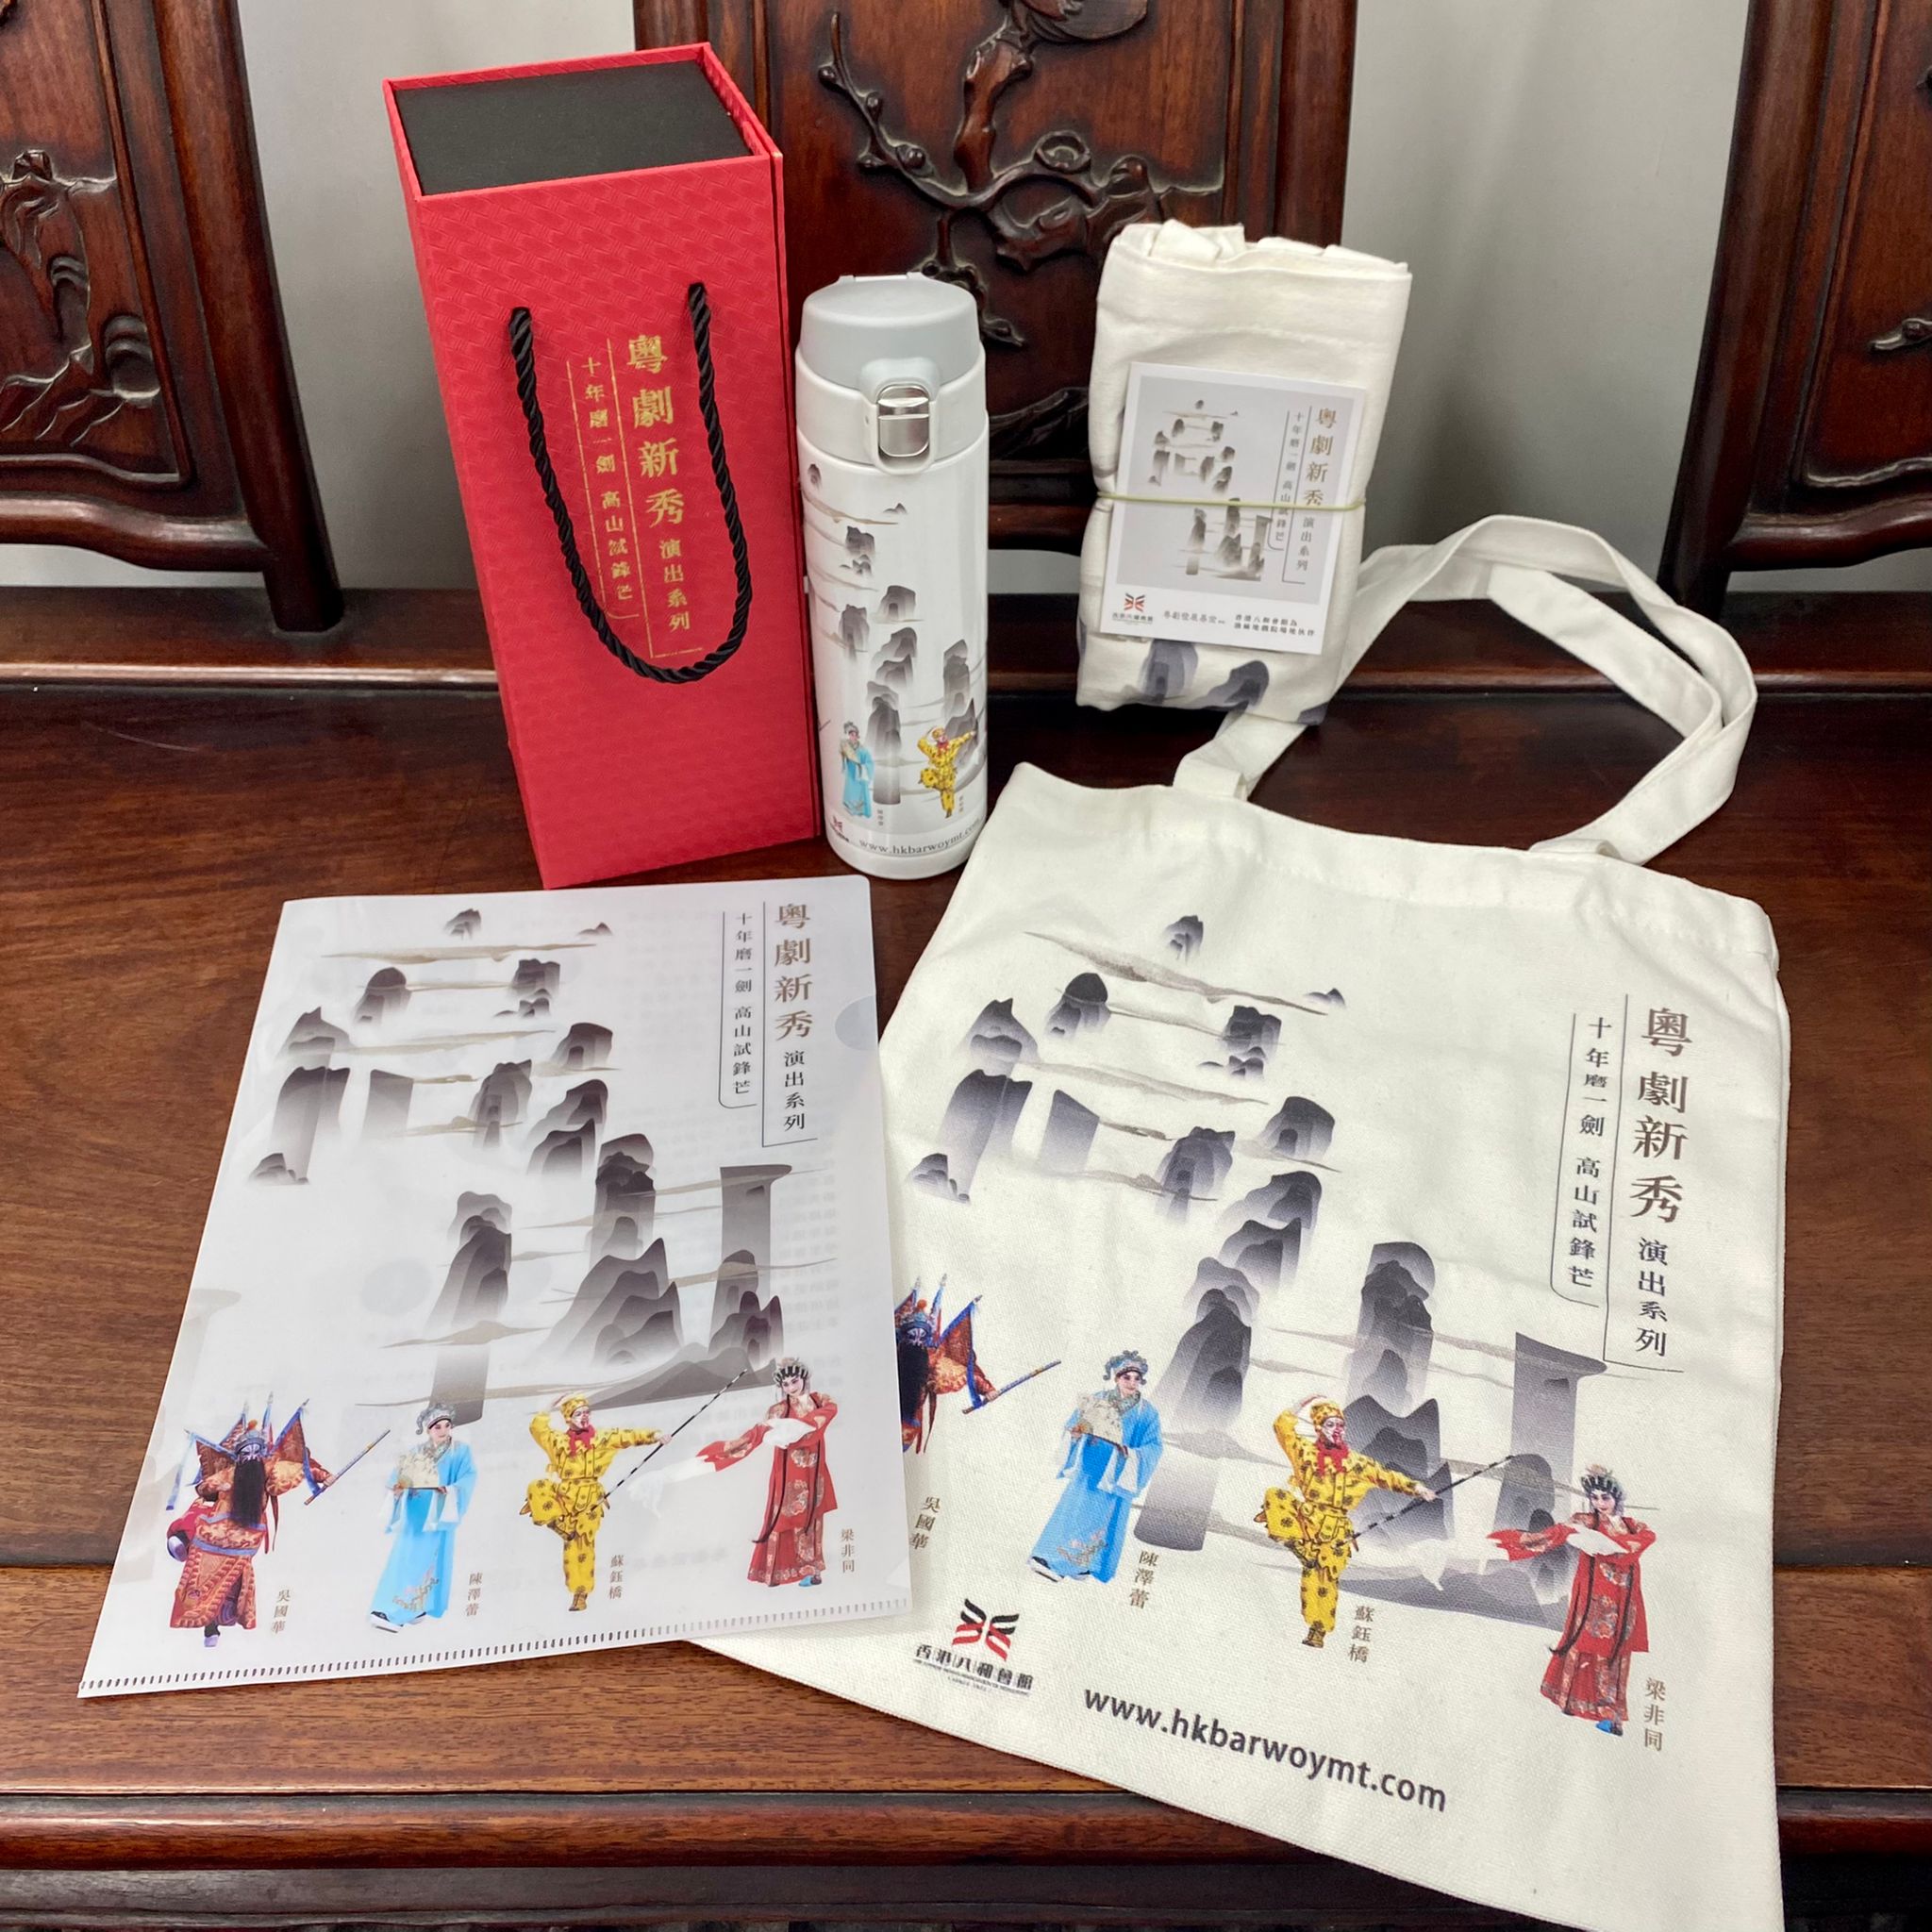 「粵劇新秀演出系列」套裝(帆布袋、保溫瓶及文件夾各1個)